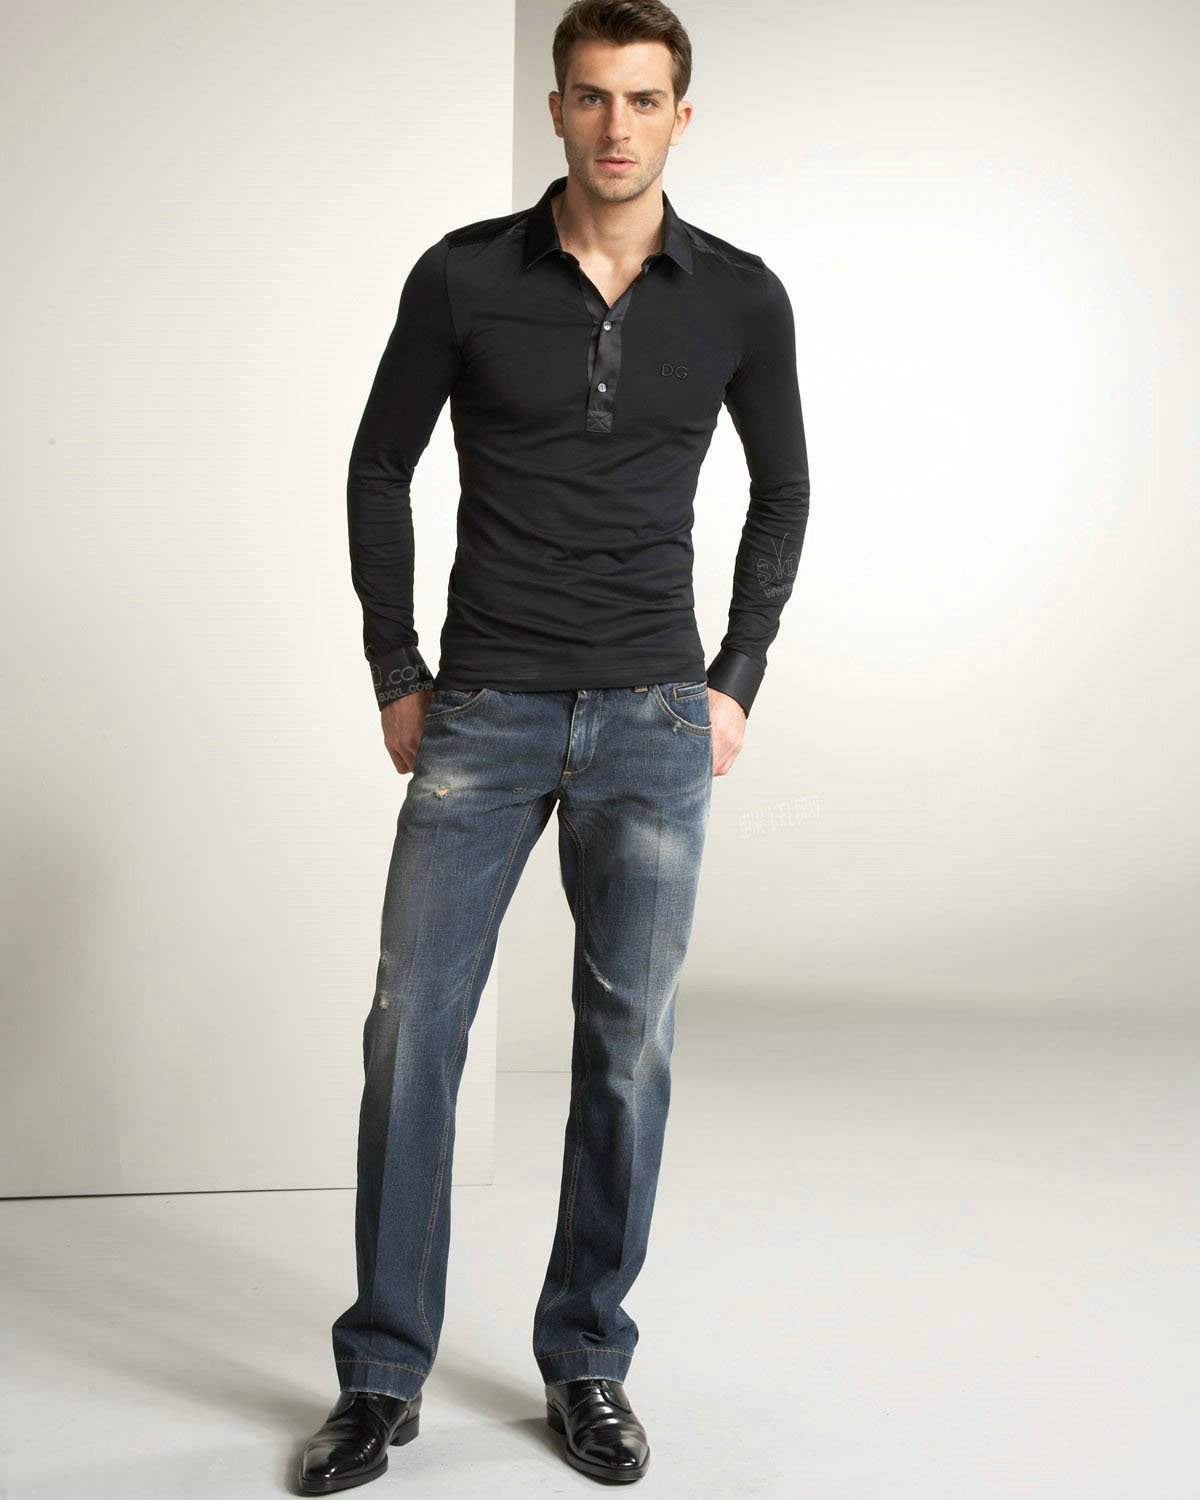 camisa social com calça jeans e sapato social